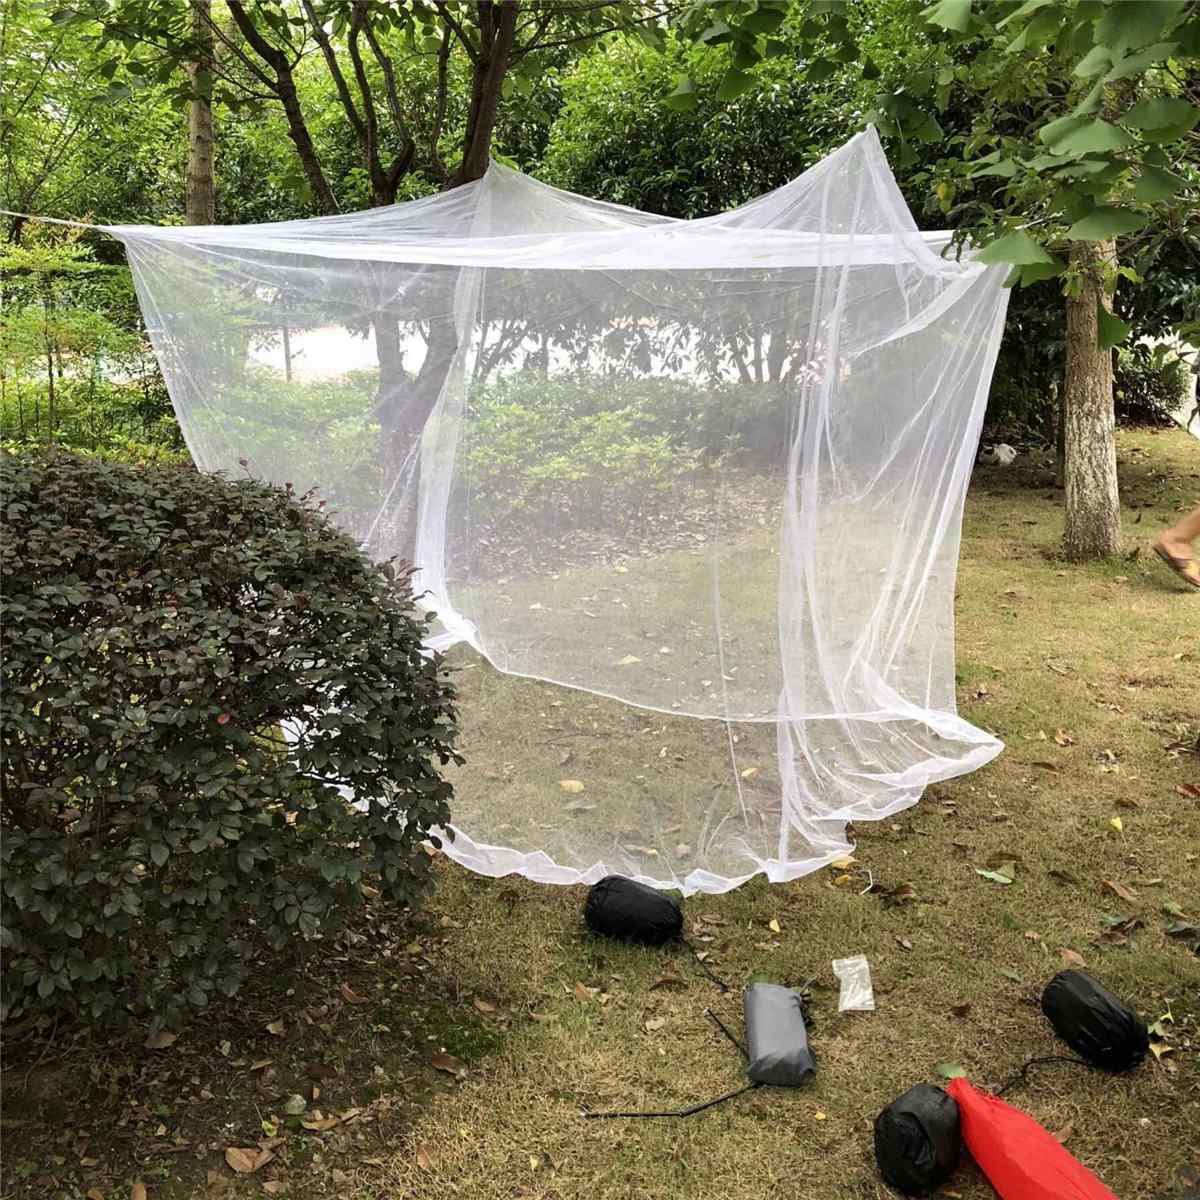 huge mosquito net